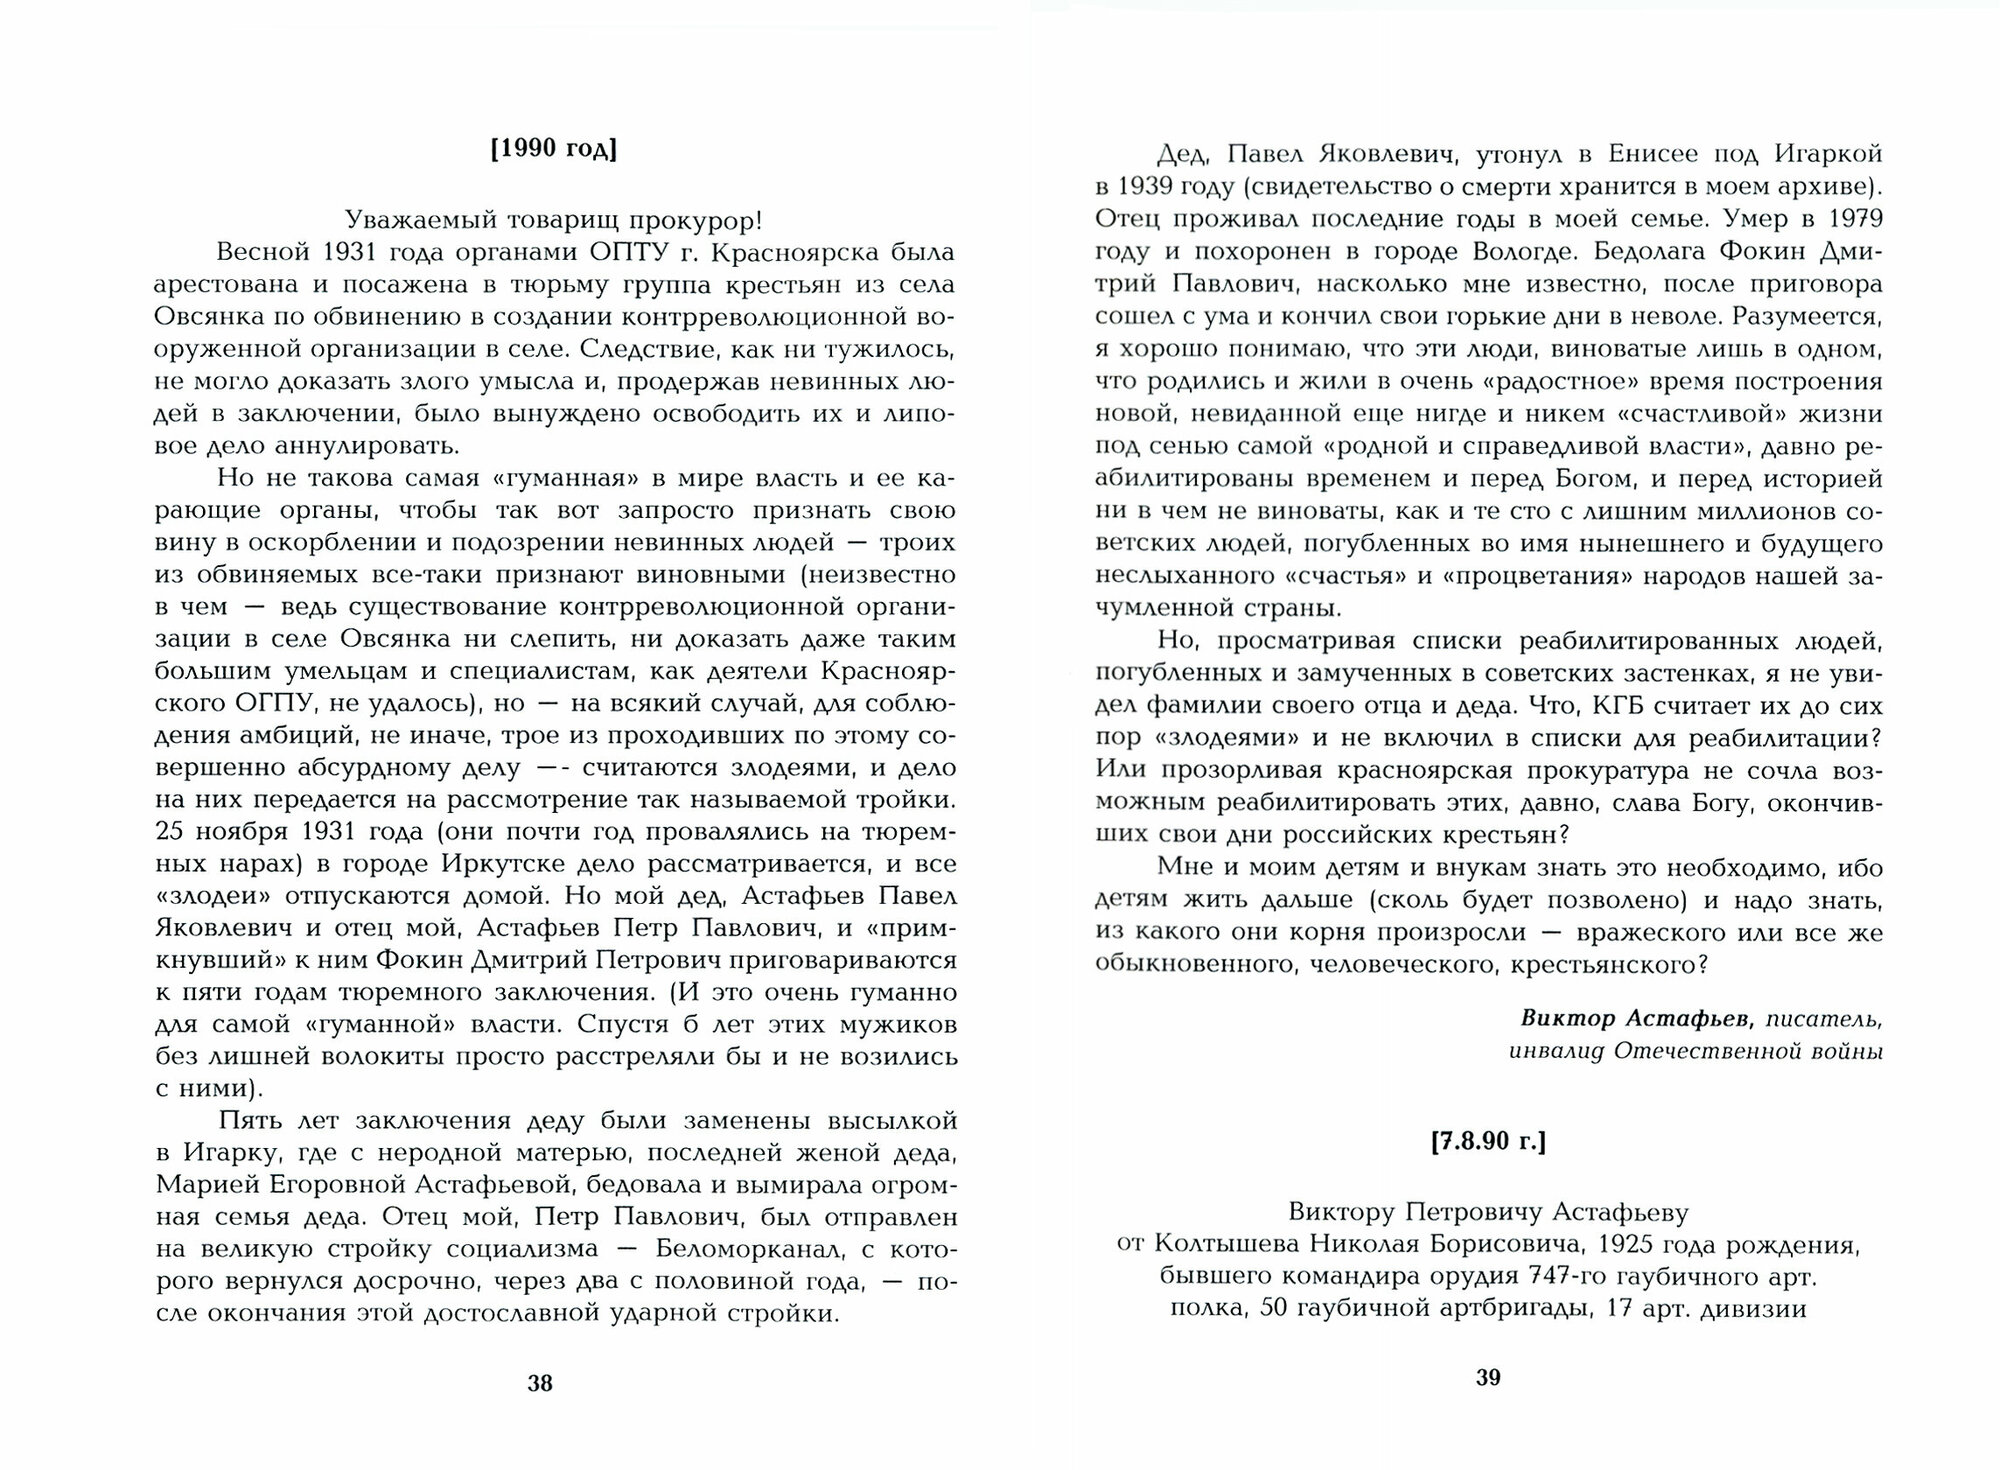 Полное собрание сочинений в 15-ти томах - фото №3